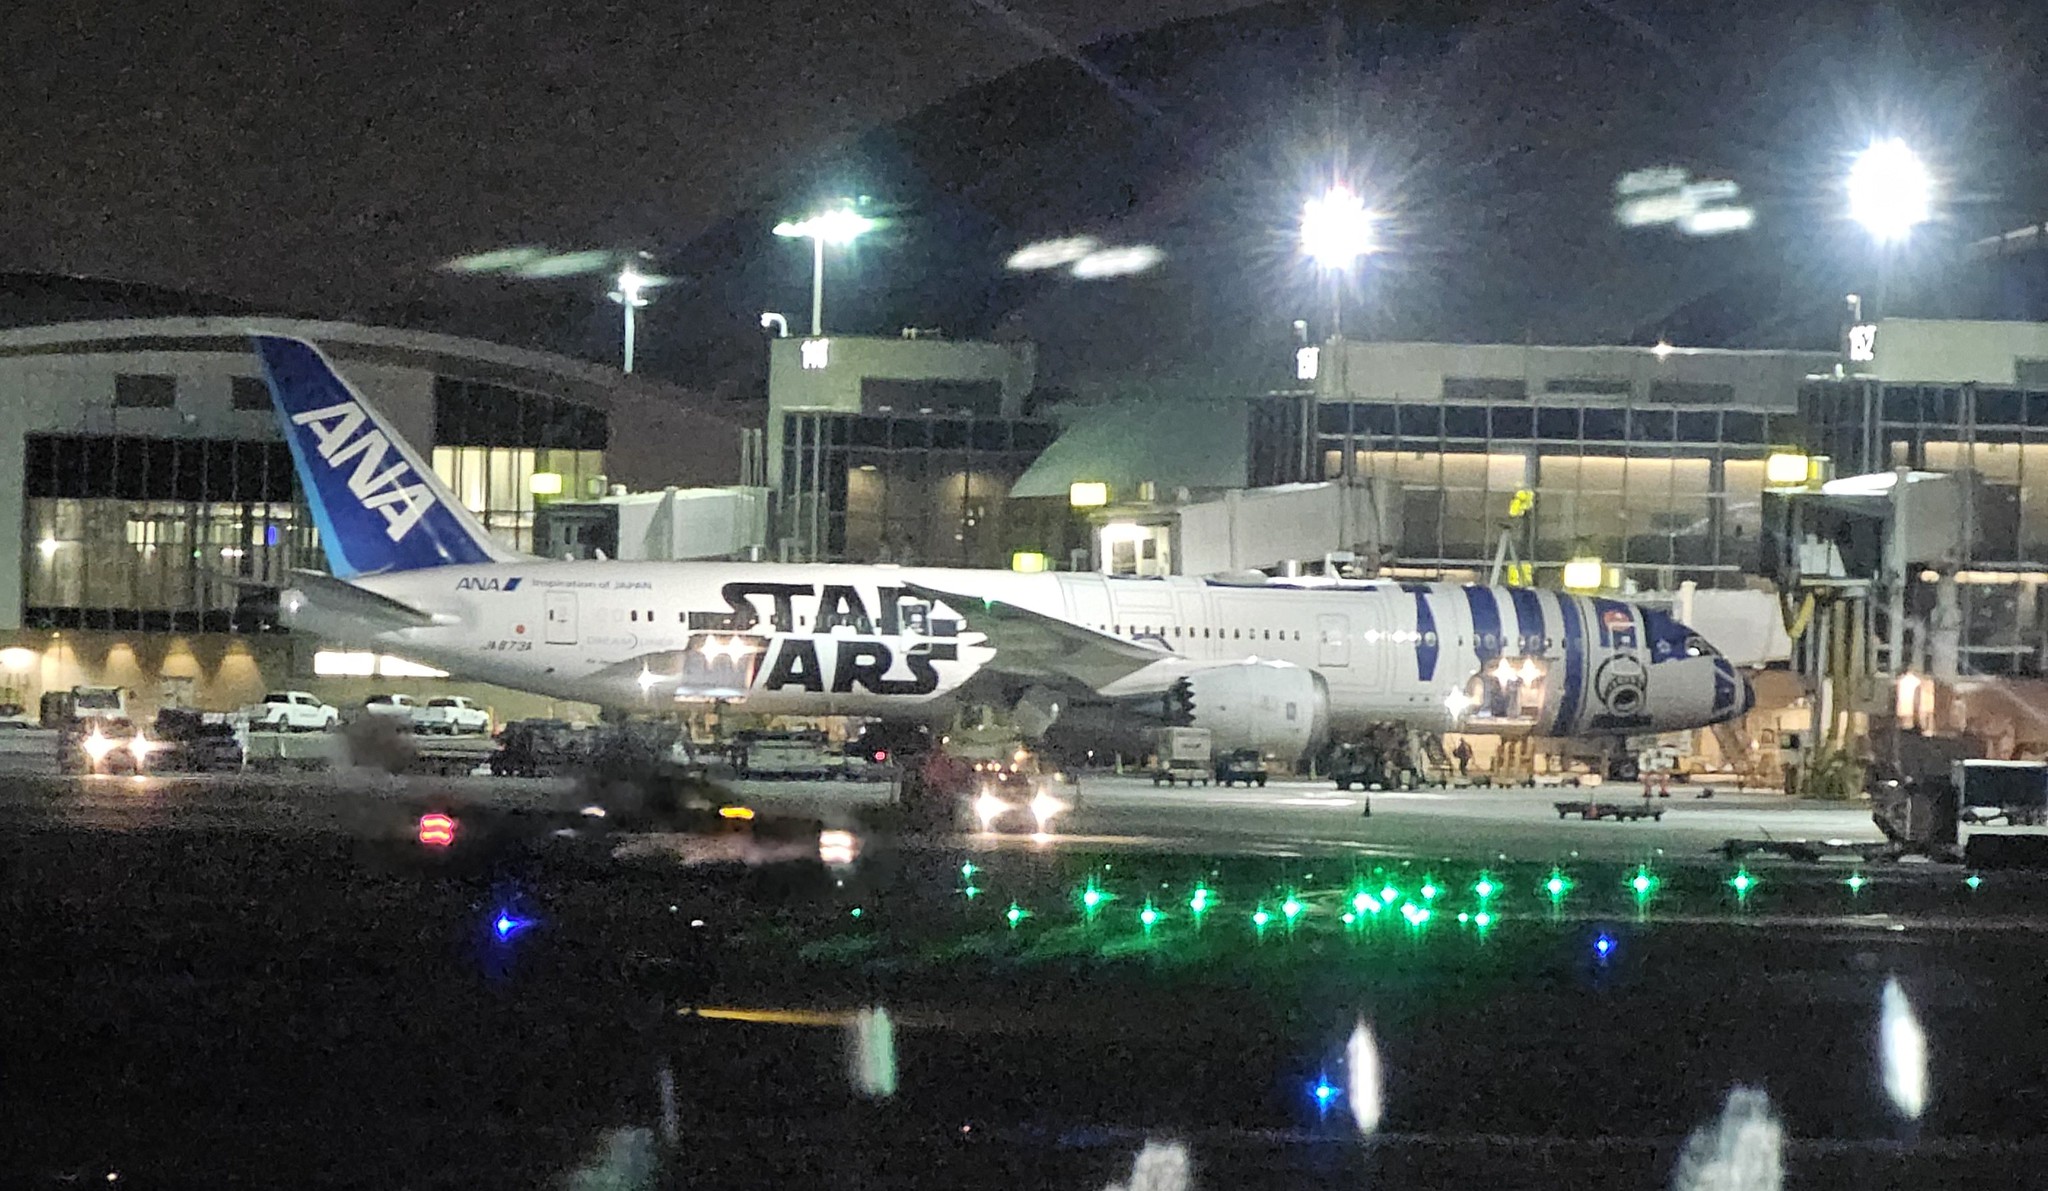 The Star Was ANA aircraft at LAX